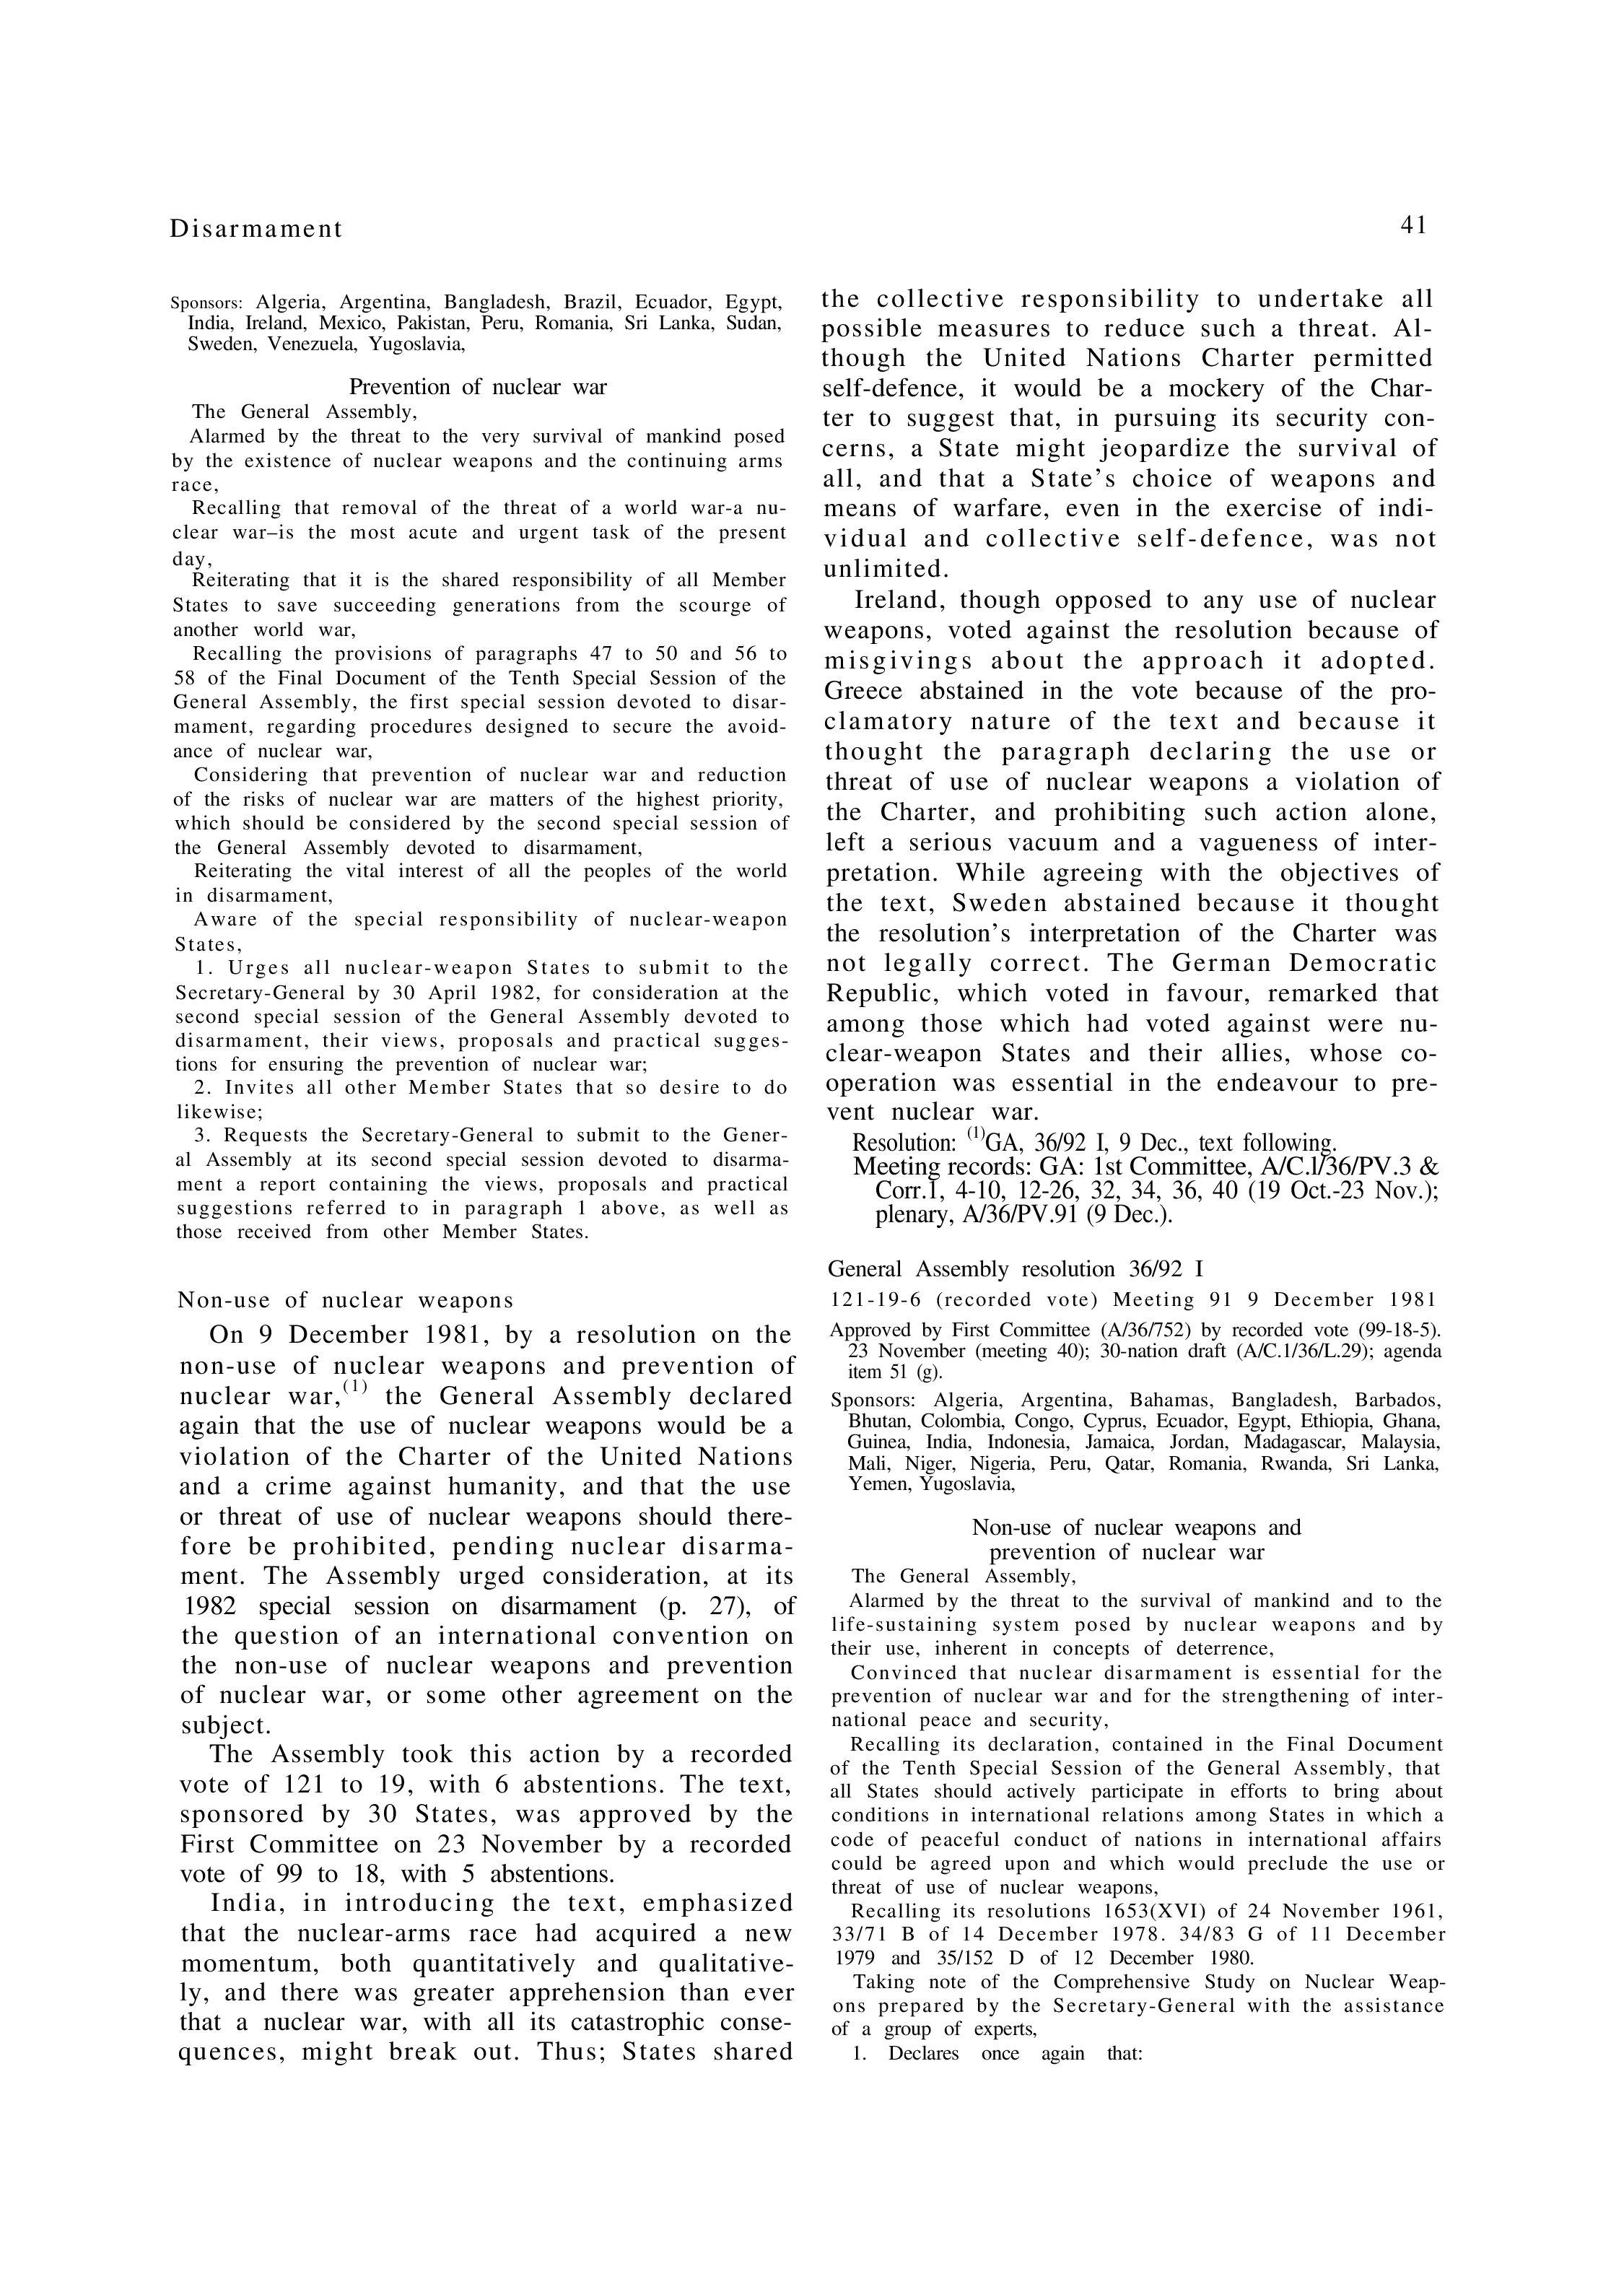 YUN Volume_Page 1981_53 excerpt